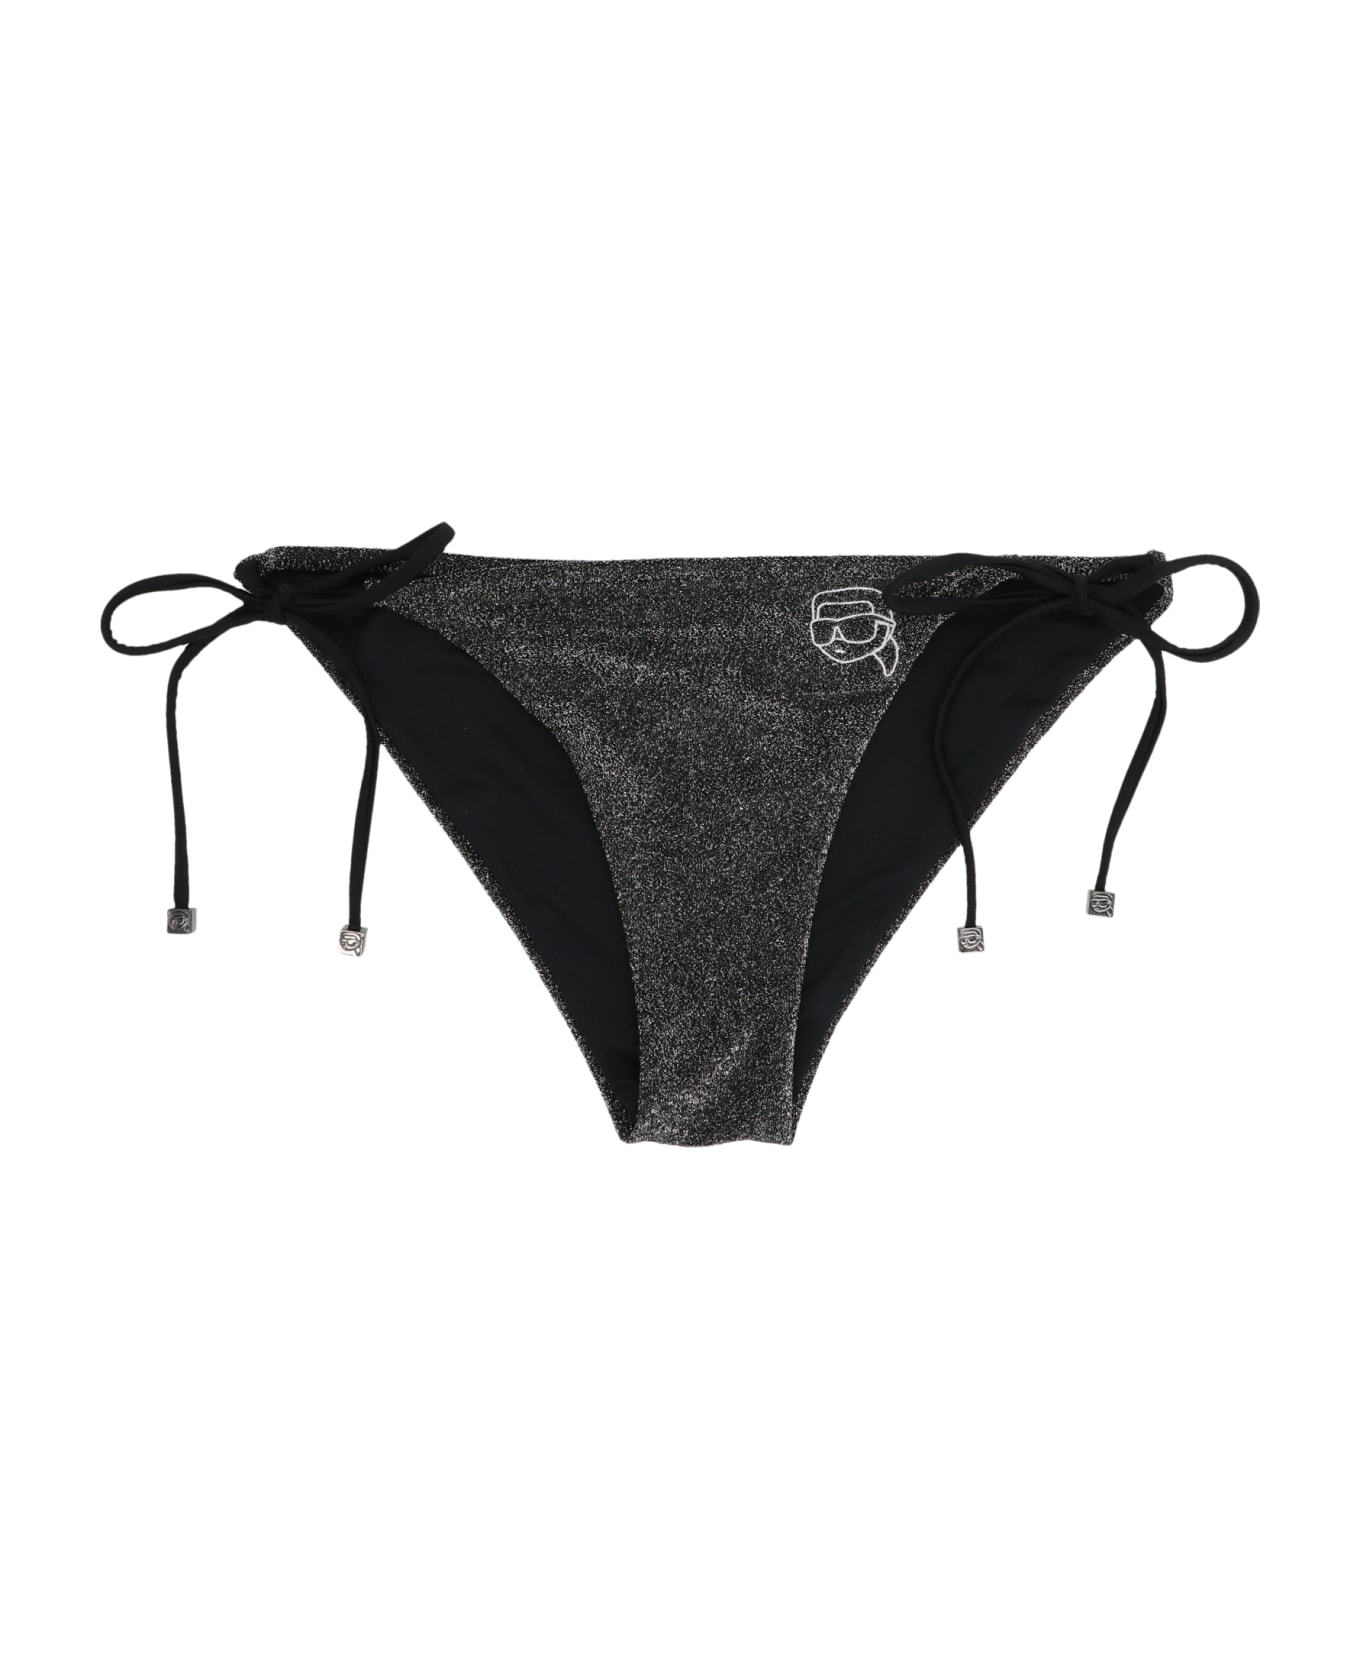 Karl Lagerfeld 'ikonik 2.0' Bikini Bottom - Black   水着